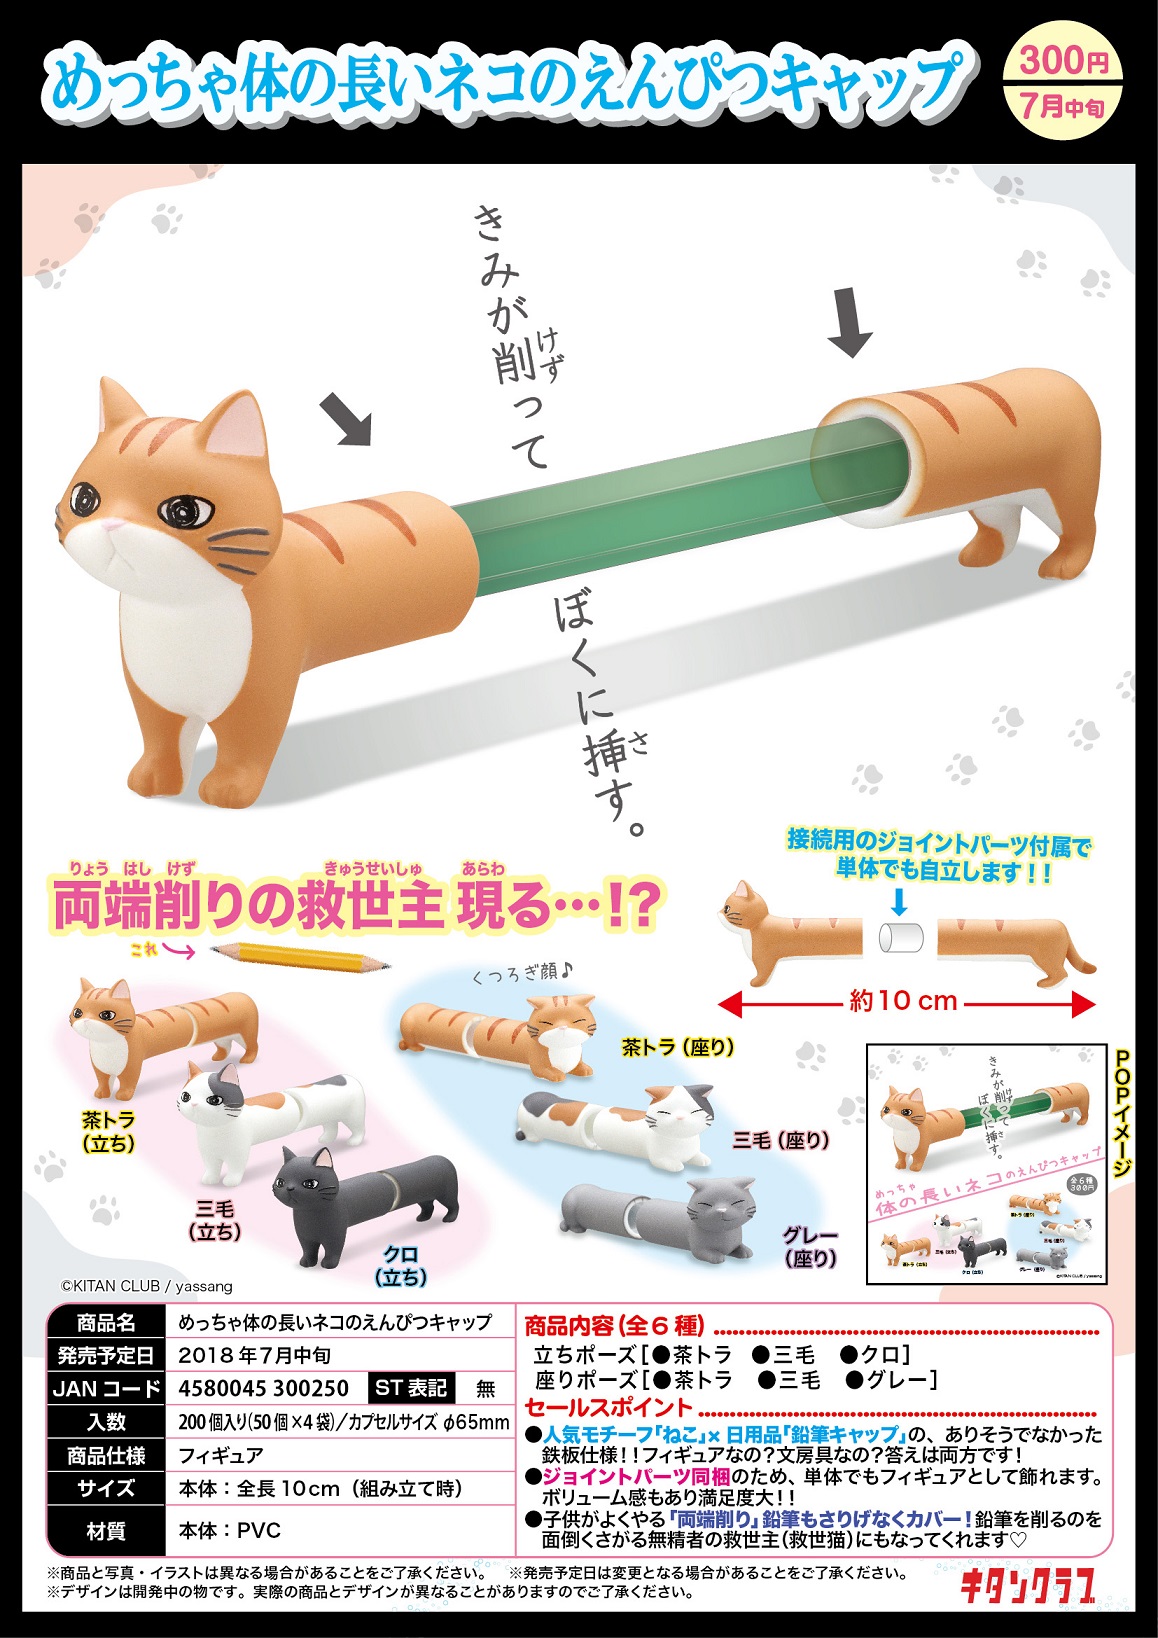 300日元扭蛋 铅笔帽小手办 超长身体的猫猫Ver. 全6种 300250 